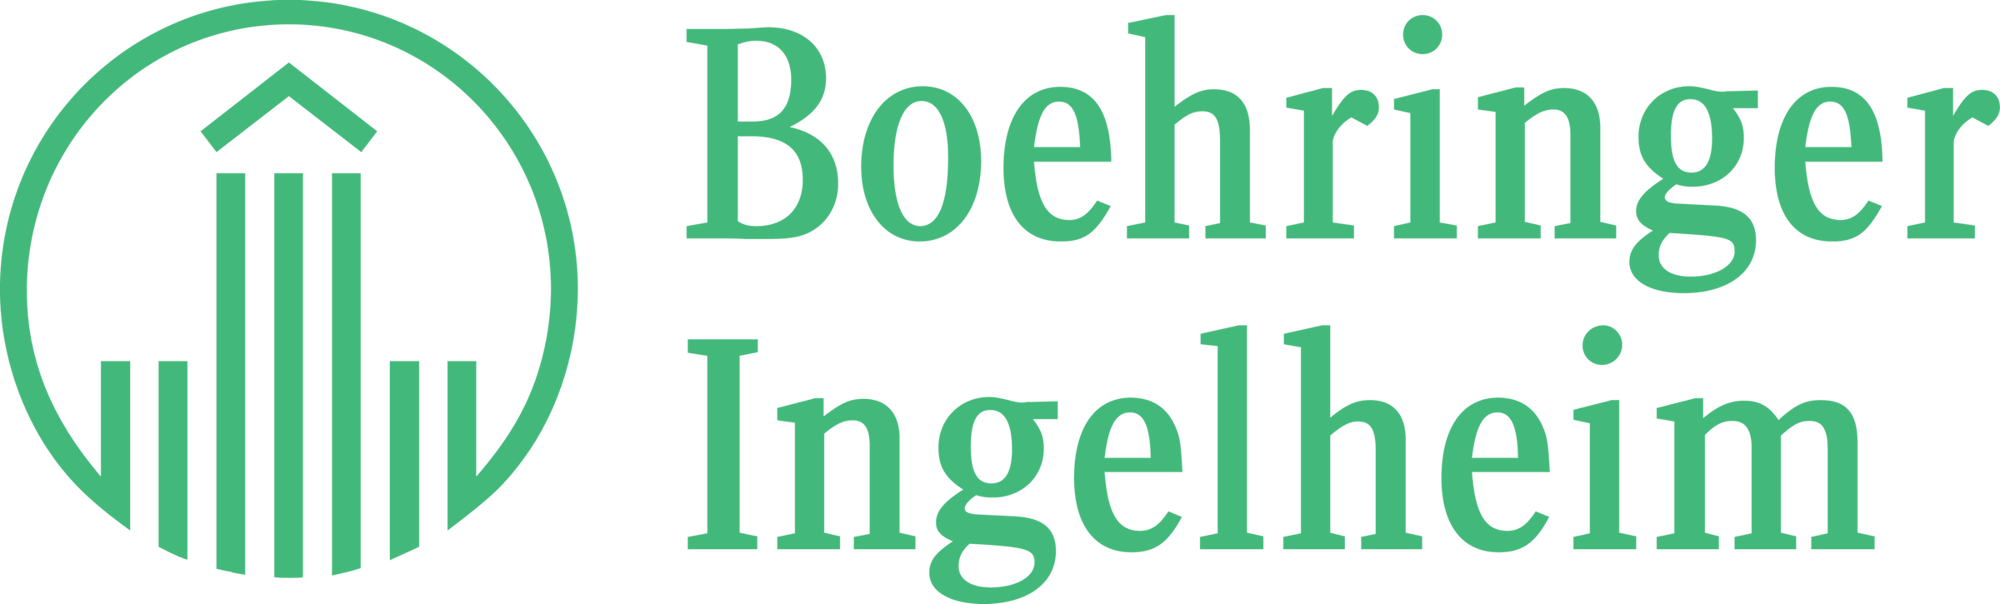 Boehringer-Ingelheim Logo Light Green